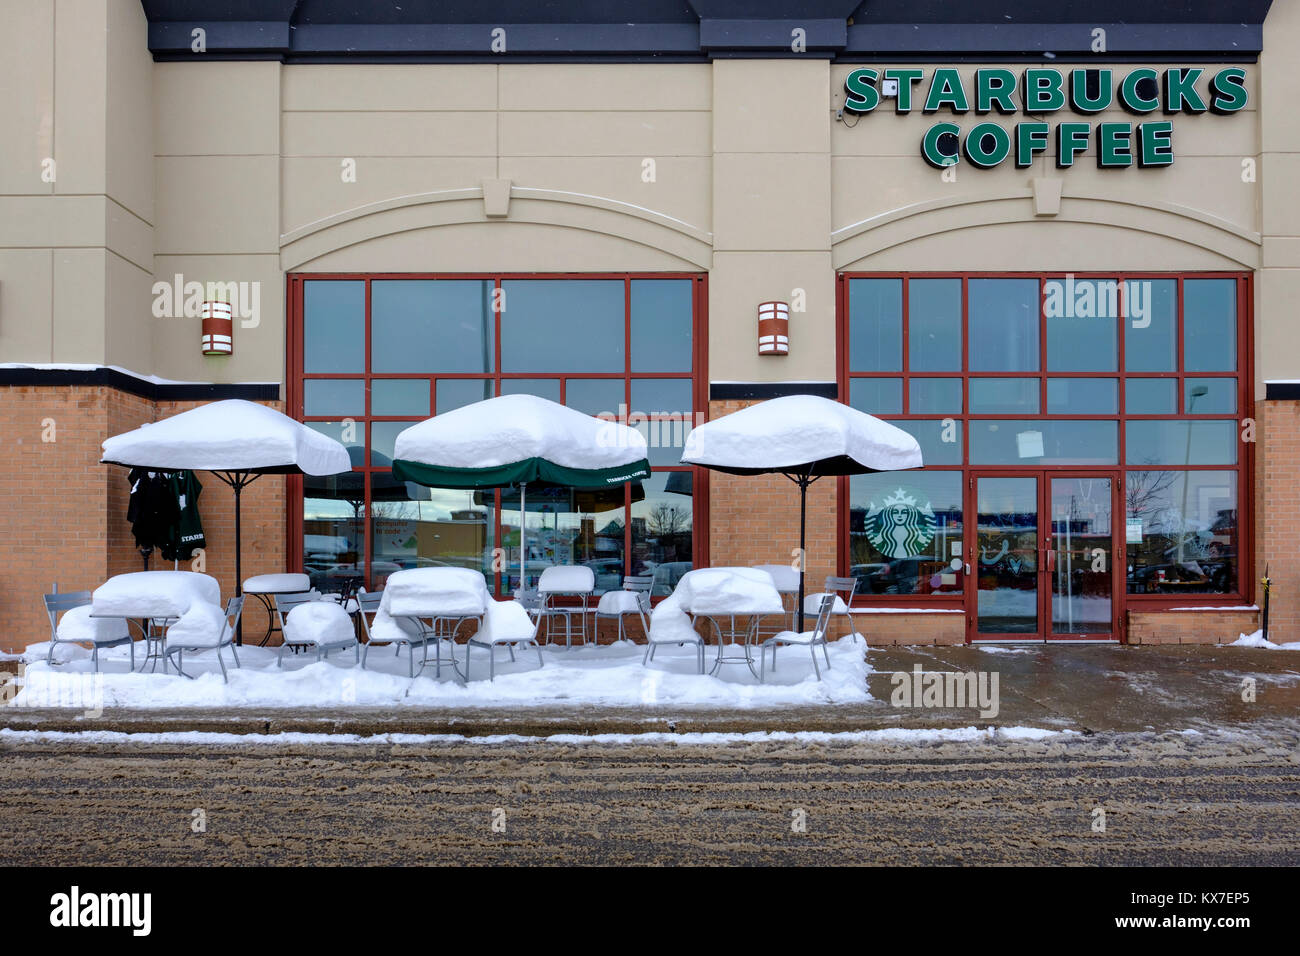 Leere Starbucks Kaffee Bürgersteig Terrasse Tische, Stühle und Sonnenschirme durch frischen Schnee bedeckt, winter Szene, London, Ontario, Kanada Stockfoto